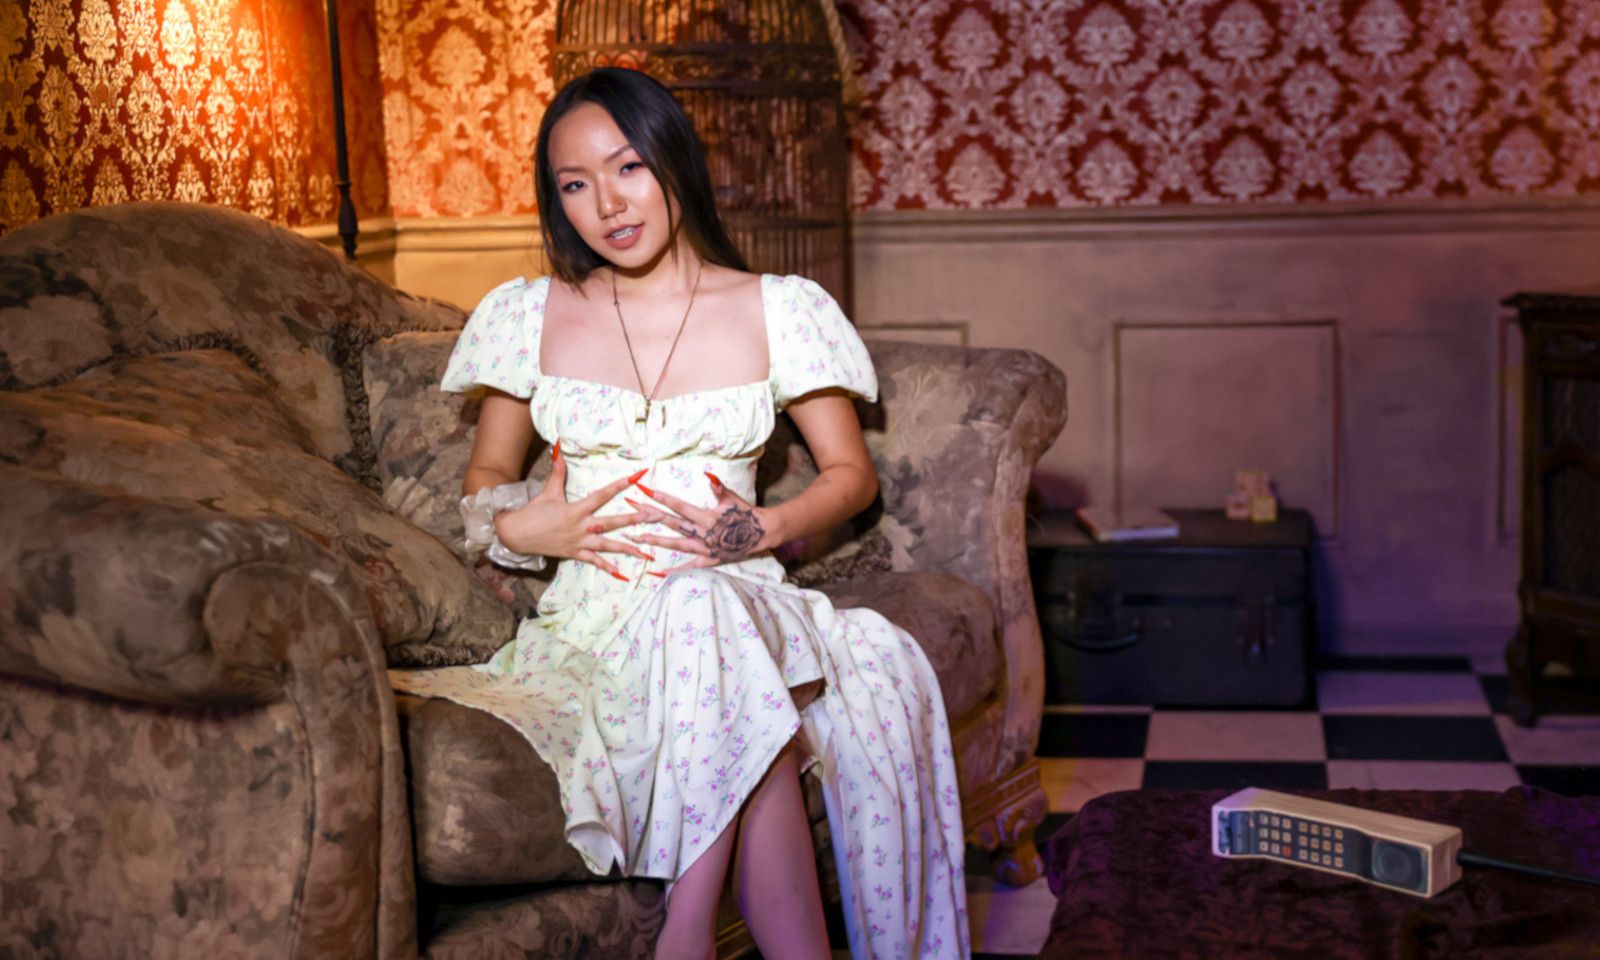 Asia Lee Stars in TeamSkeet's 'Five Nights at Freddy's' Parody